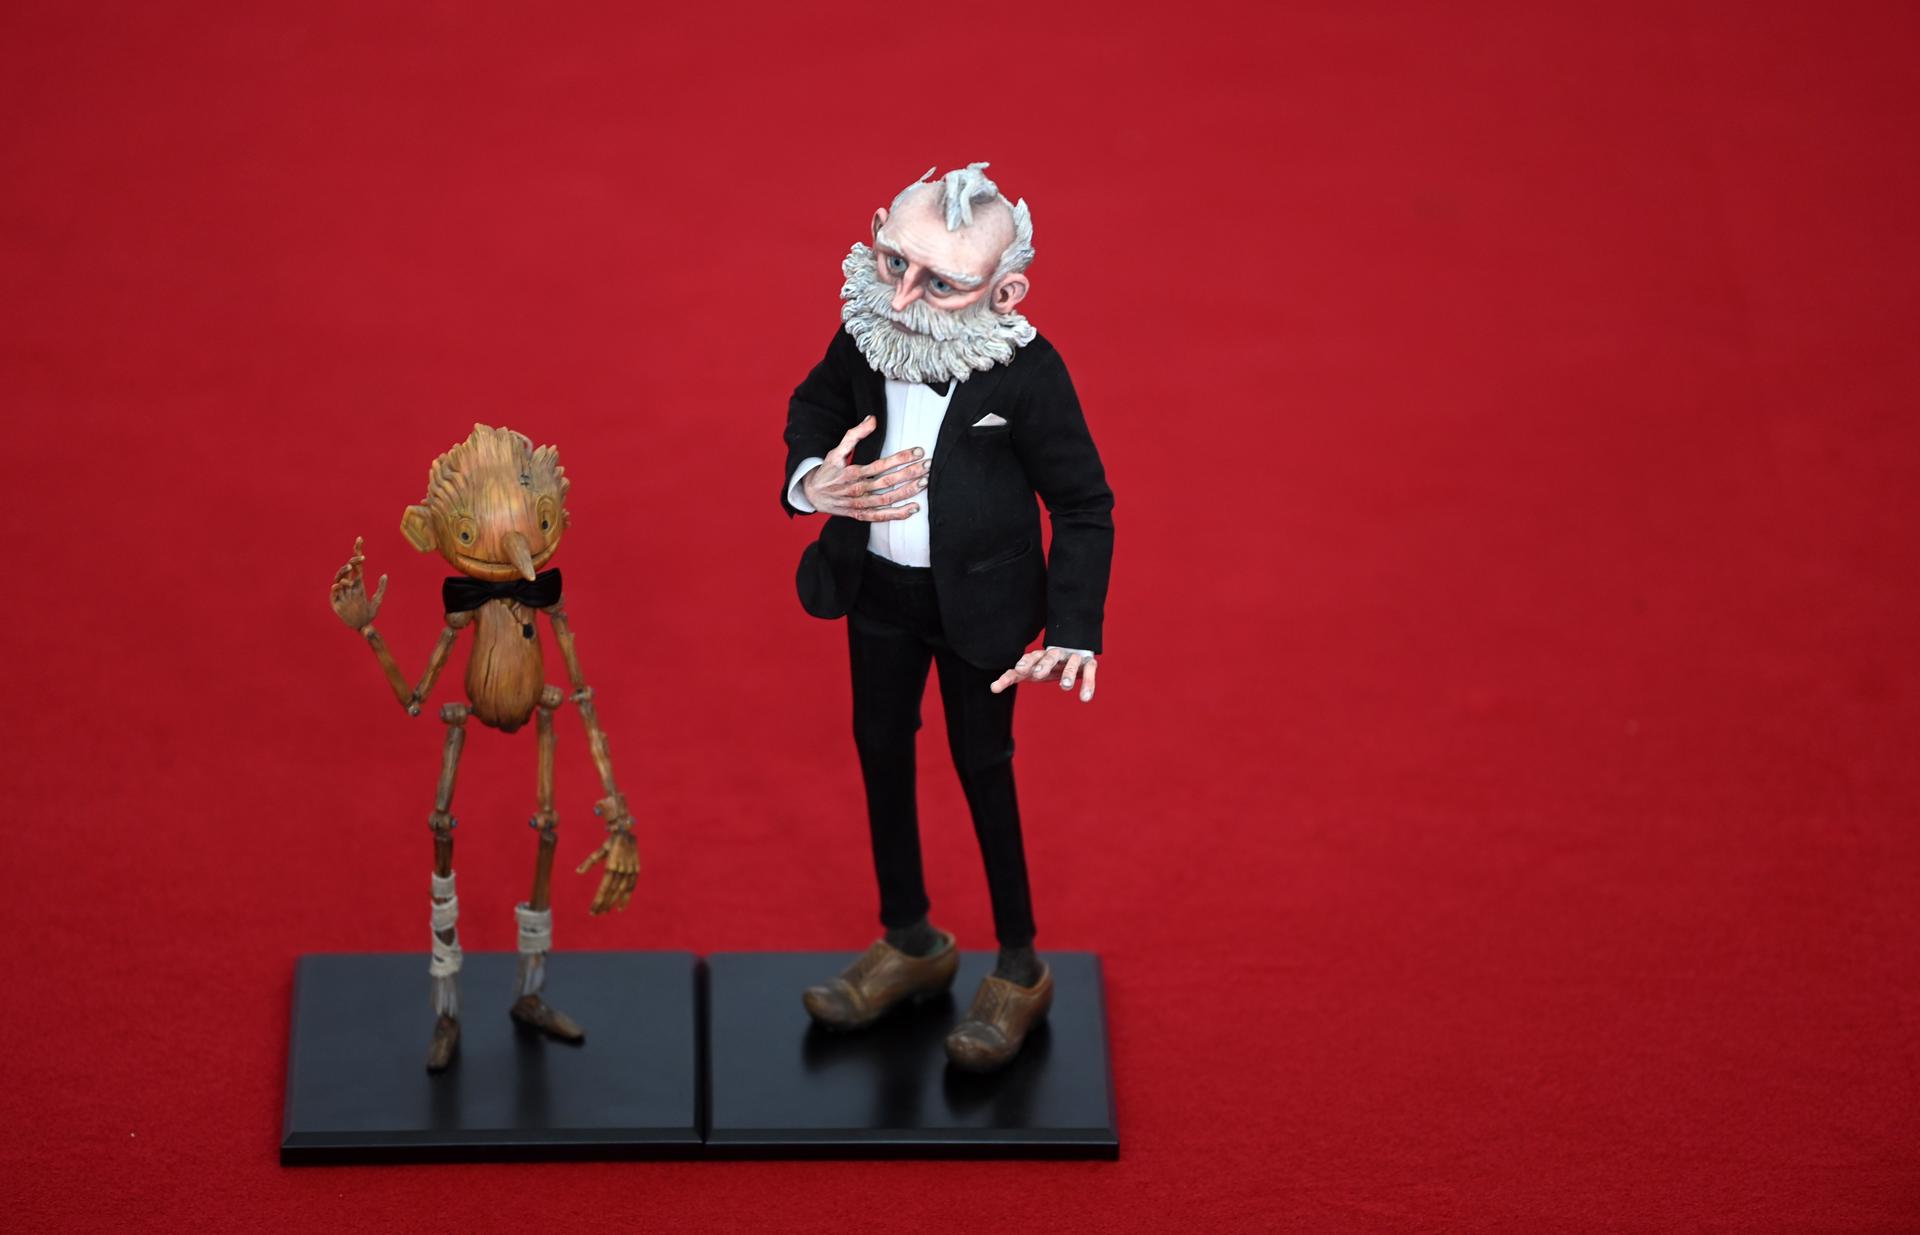 Muñecos de los personajes protagonistas de la película "Pinocchio", de Guillermo del Toro, sobre la alfombra roja de la ceremonia de entrega de los Premios Bafta, de Londres, donde la cinta ha sido galardonada como mejor filme de animación. EFE/EPA/Neil Hall